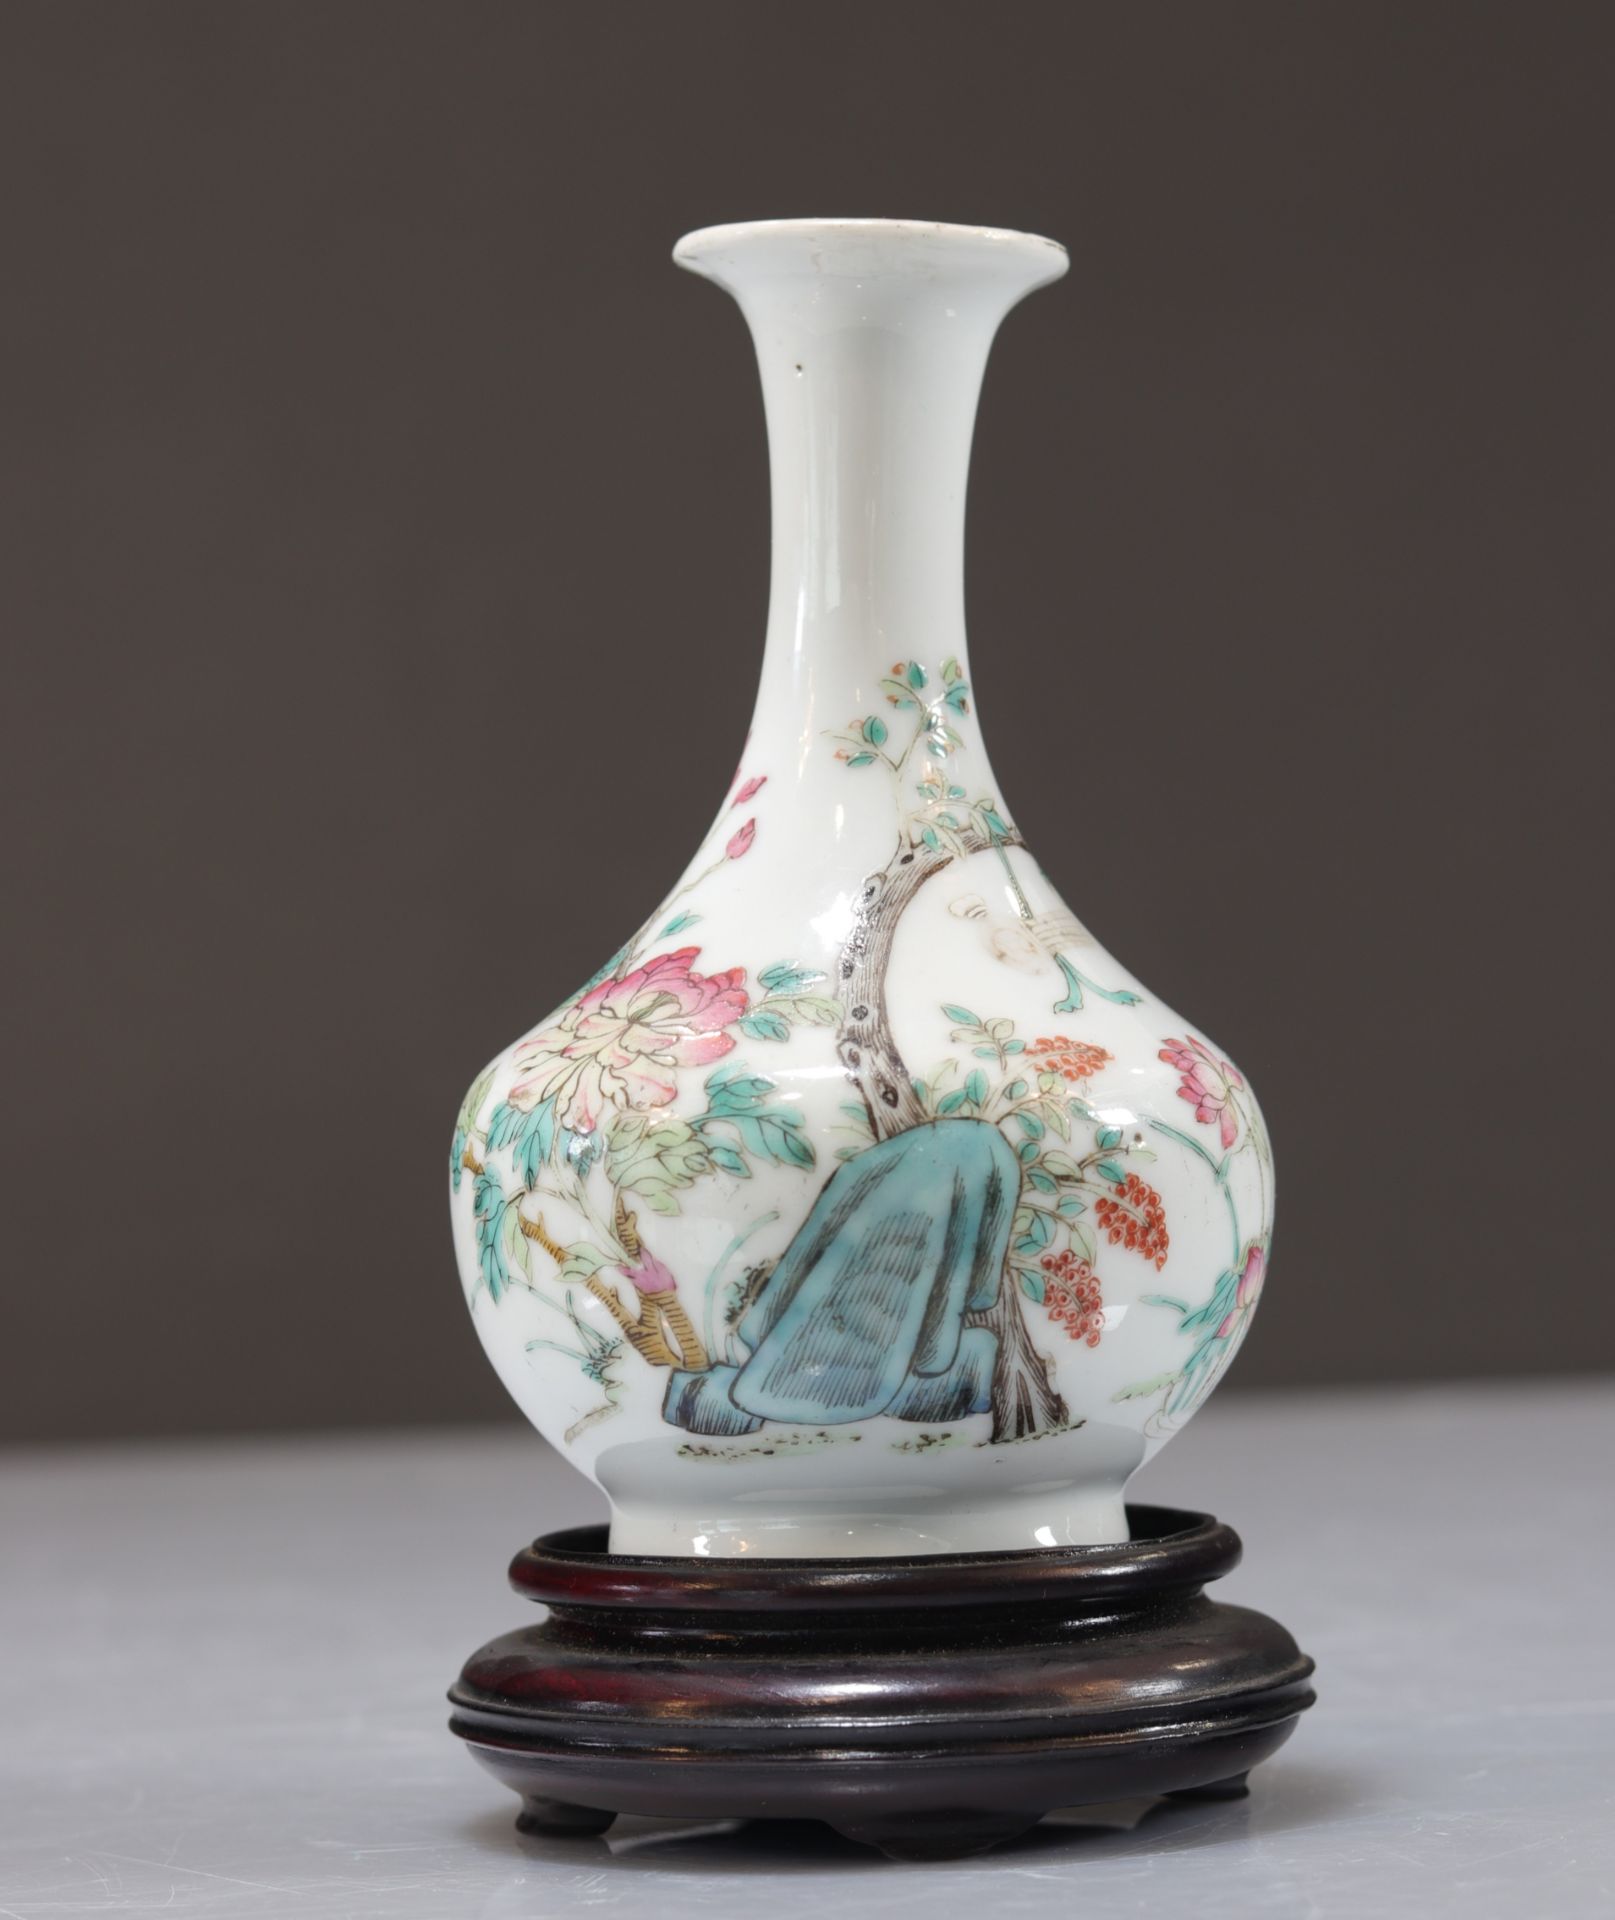 Famille rose porcelain vase with floral decoration